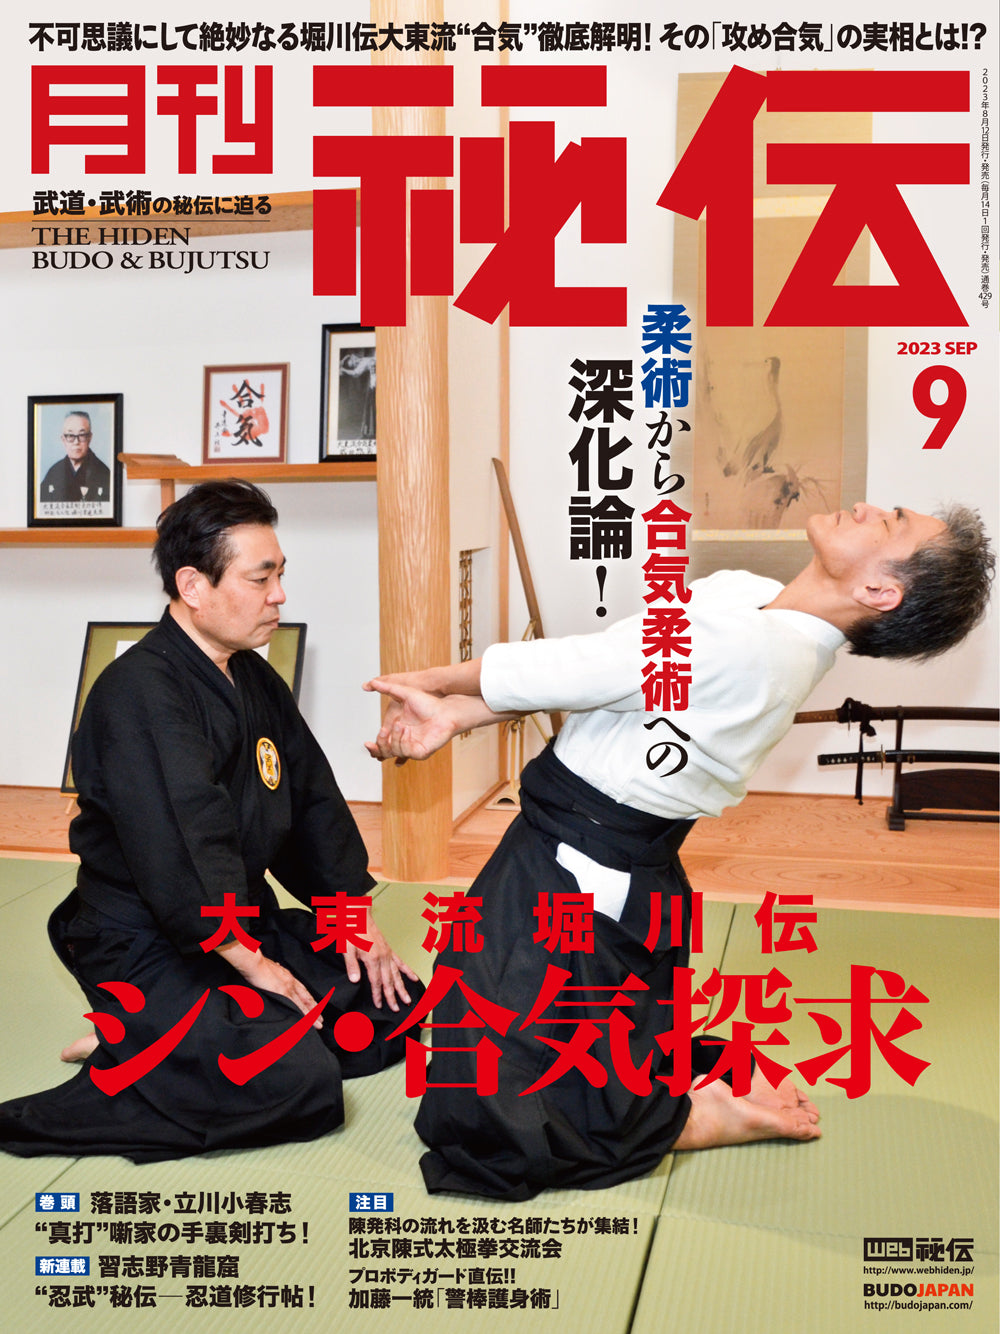 Revista Hiden Budo & Bujutsu Septiembre 2023